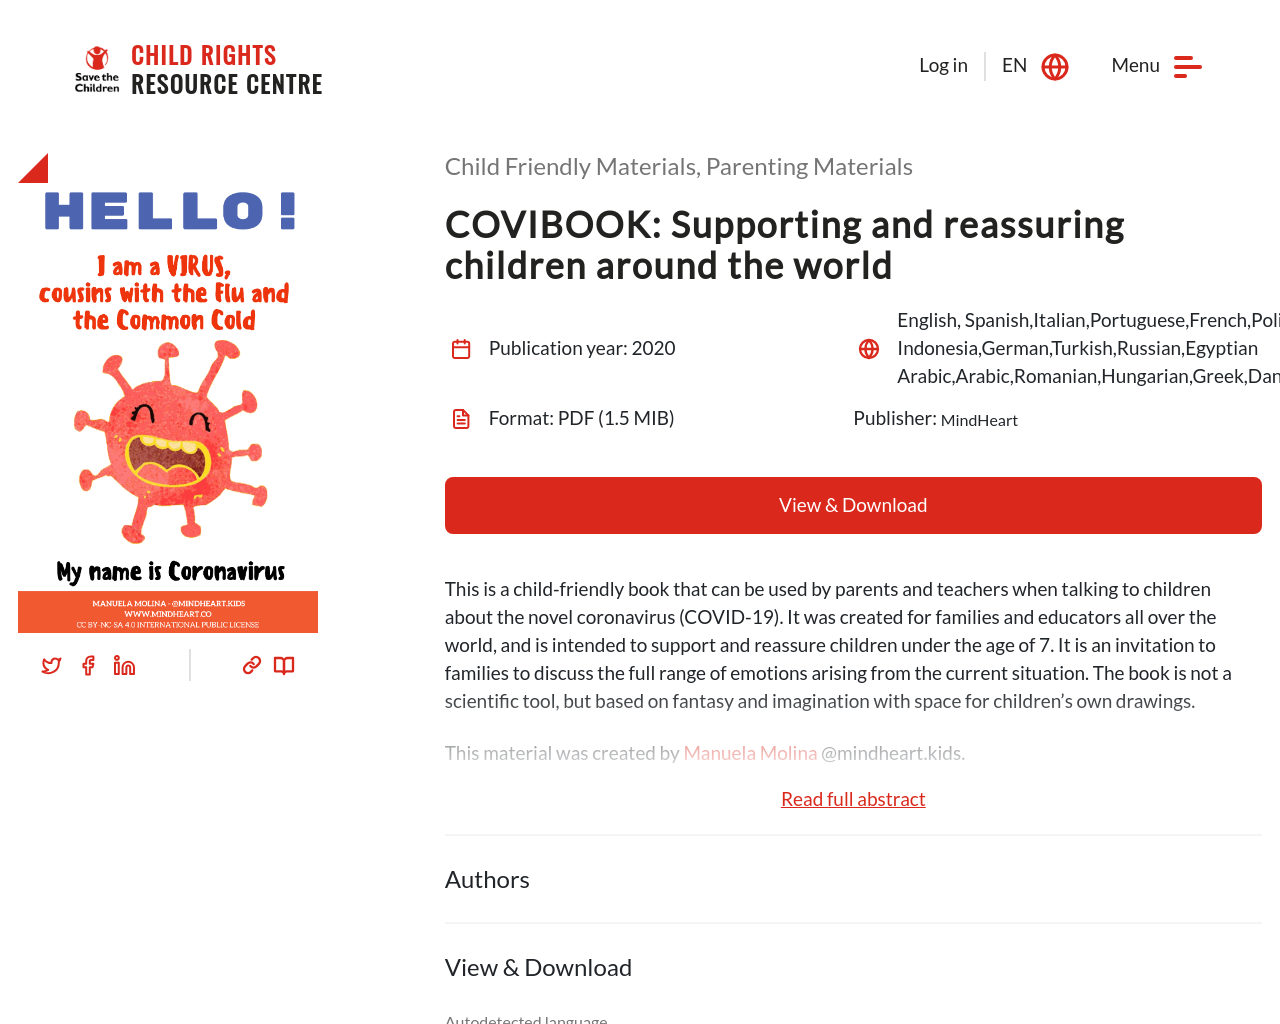 Save the Children COVIBOOK